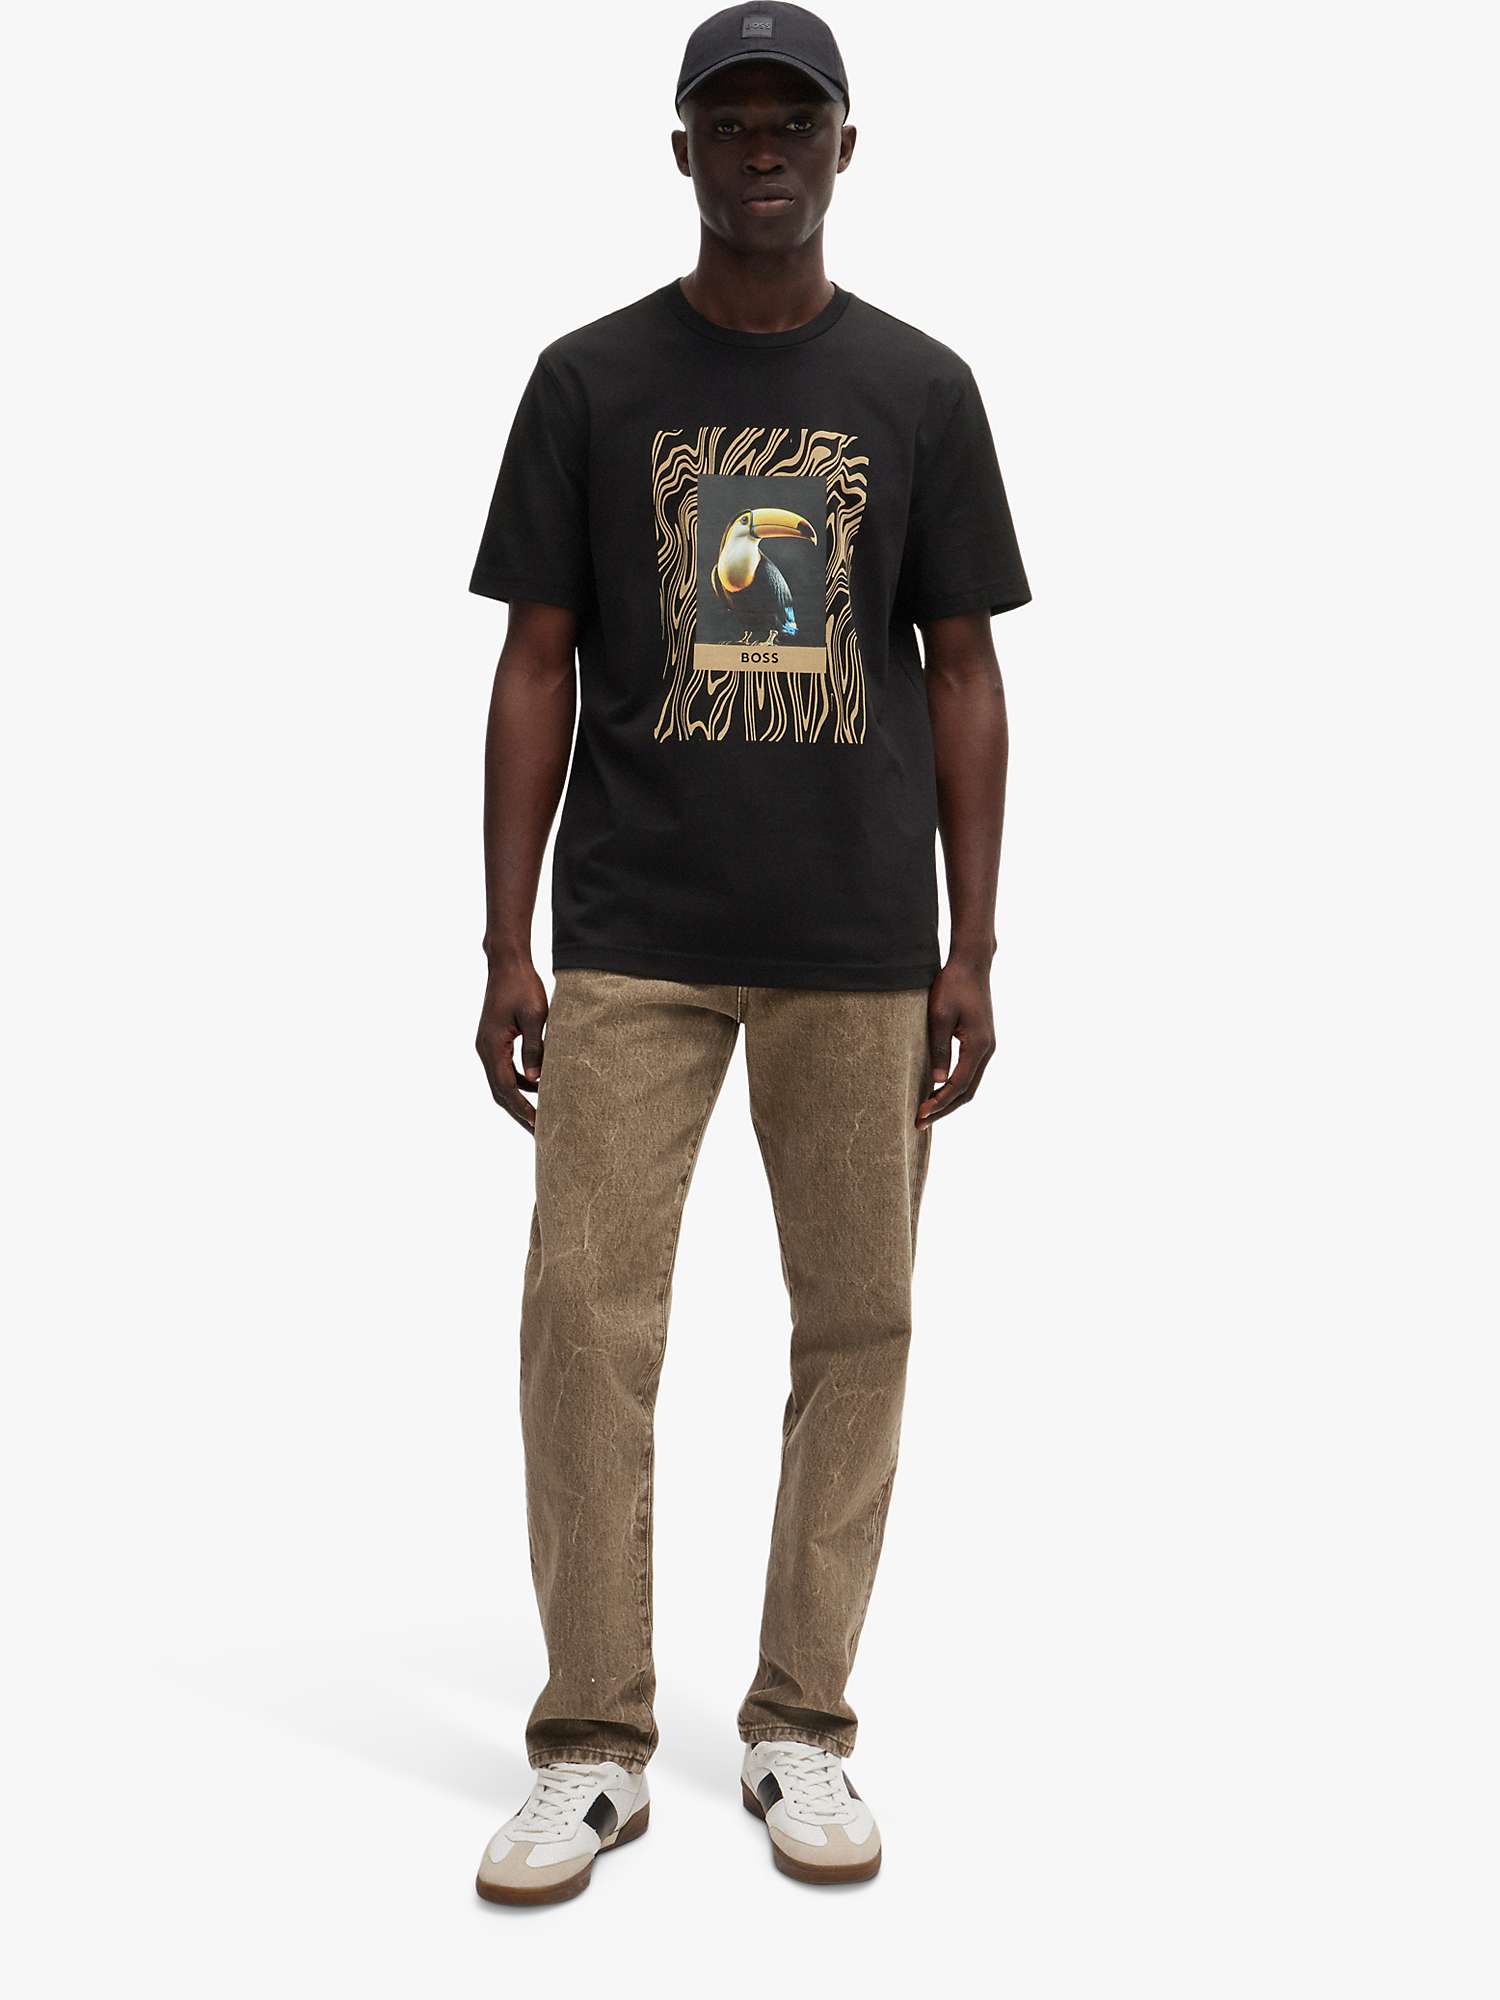 Buy BOSS Tucan Regular Fit T-Shirt Online at johnlewis.com